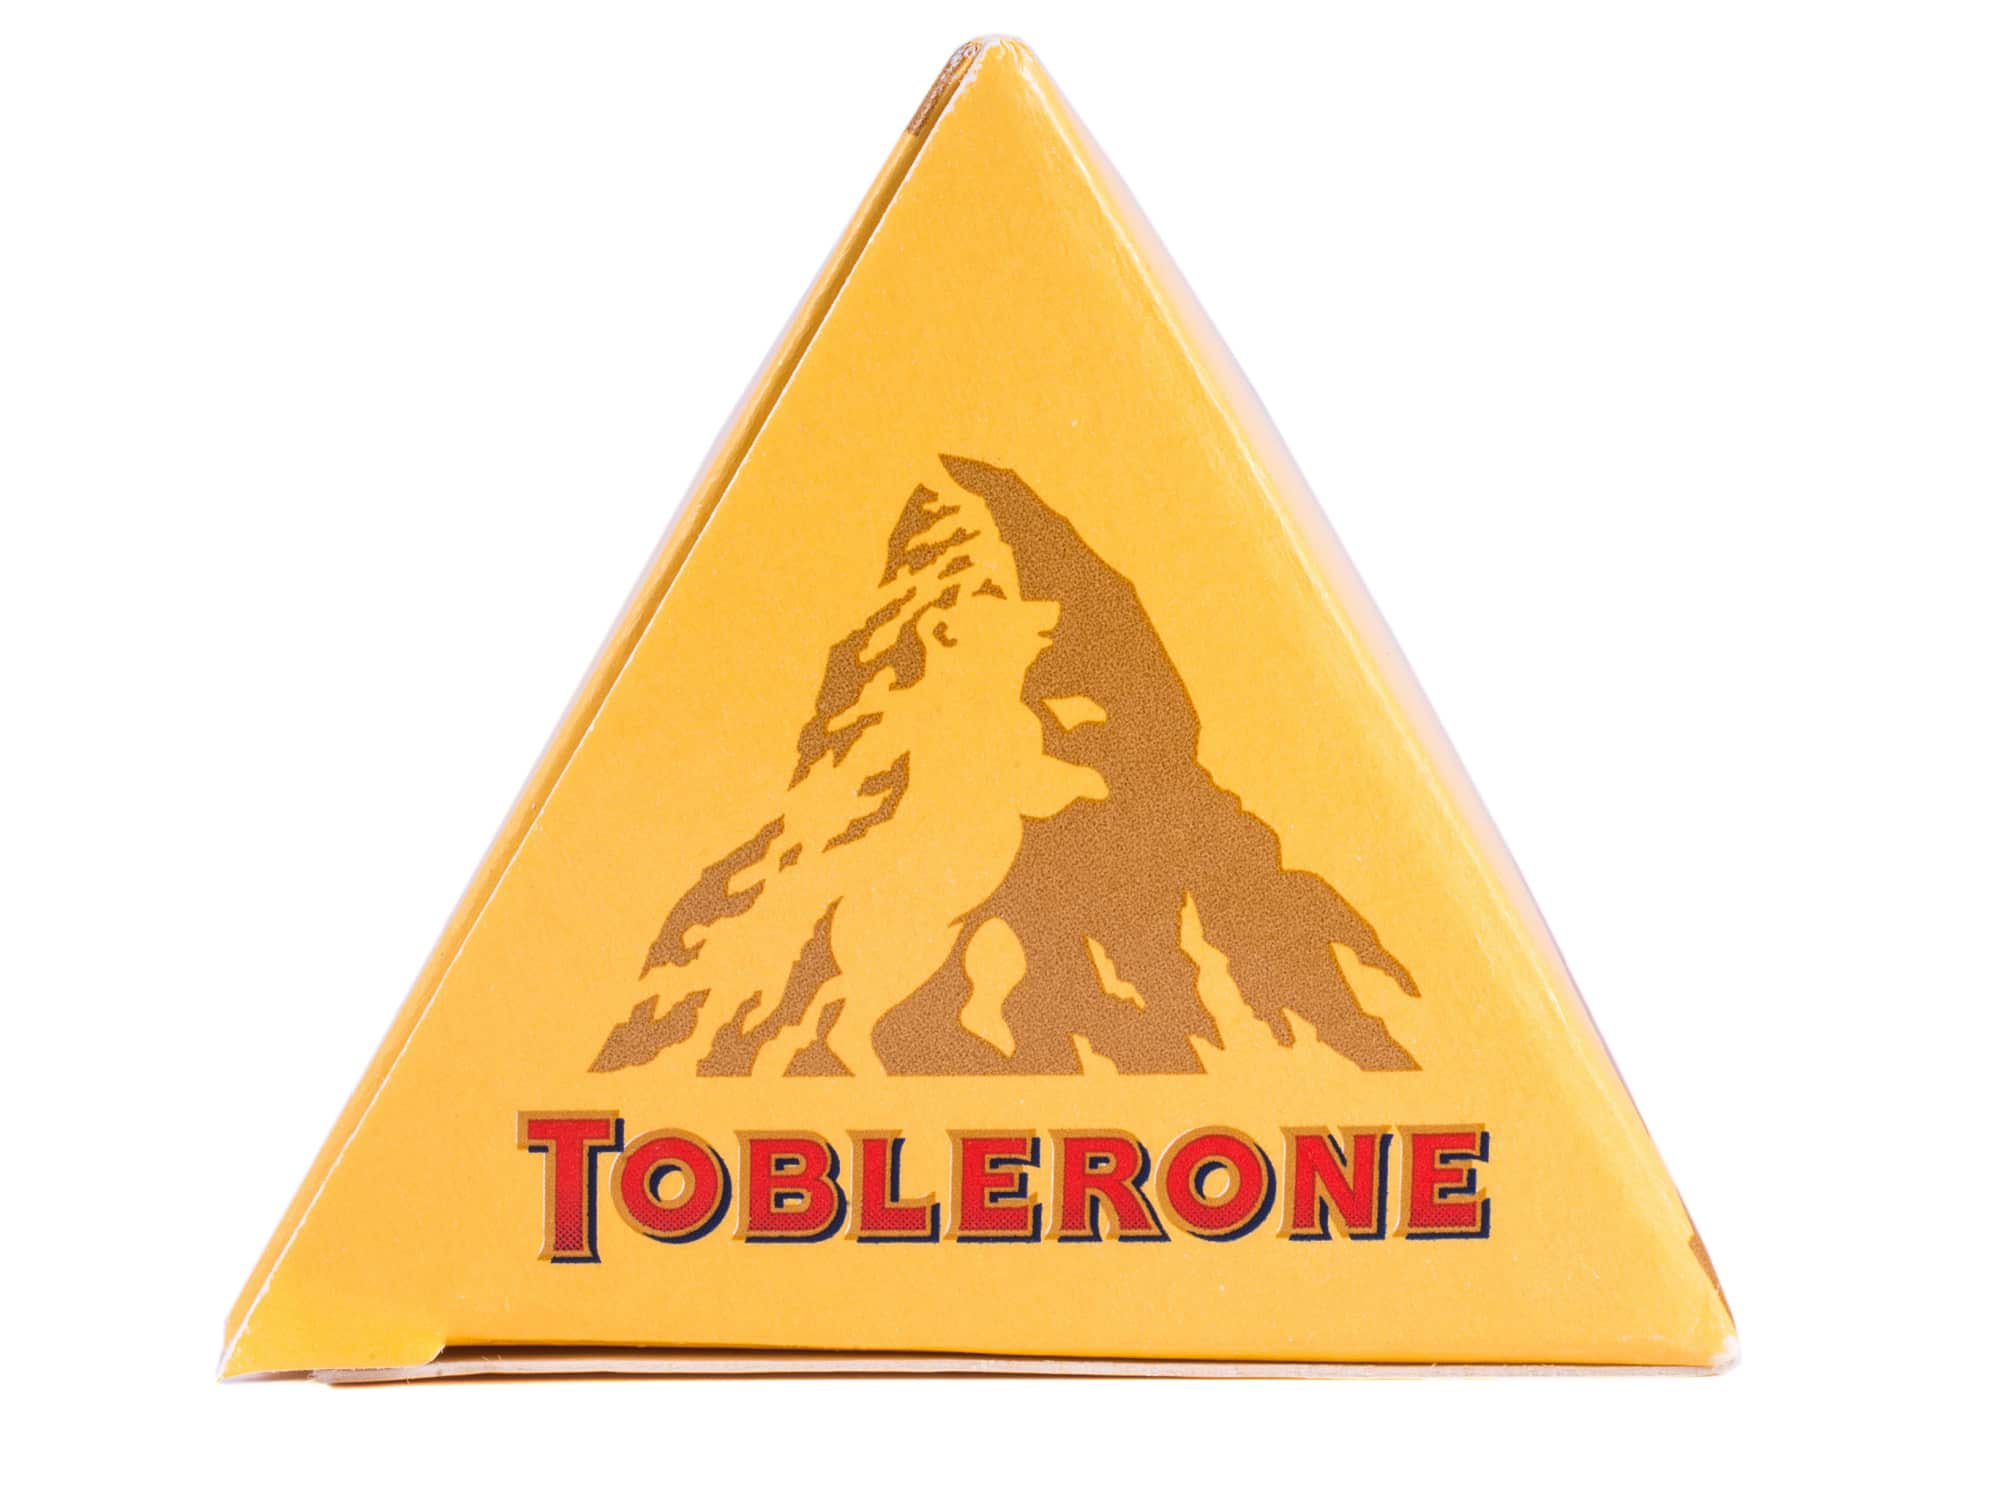  Goodbye, Toblerone Mountain : le célèbre logo du chocolat change - découvrez pourquoi !